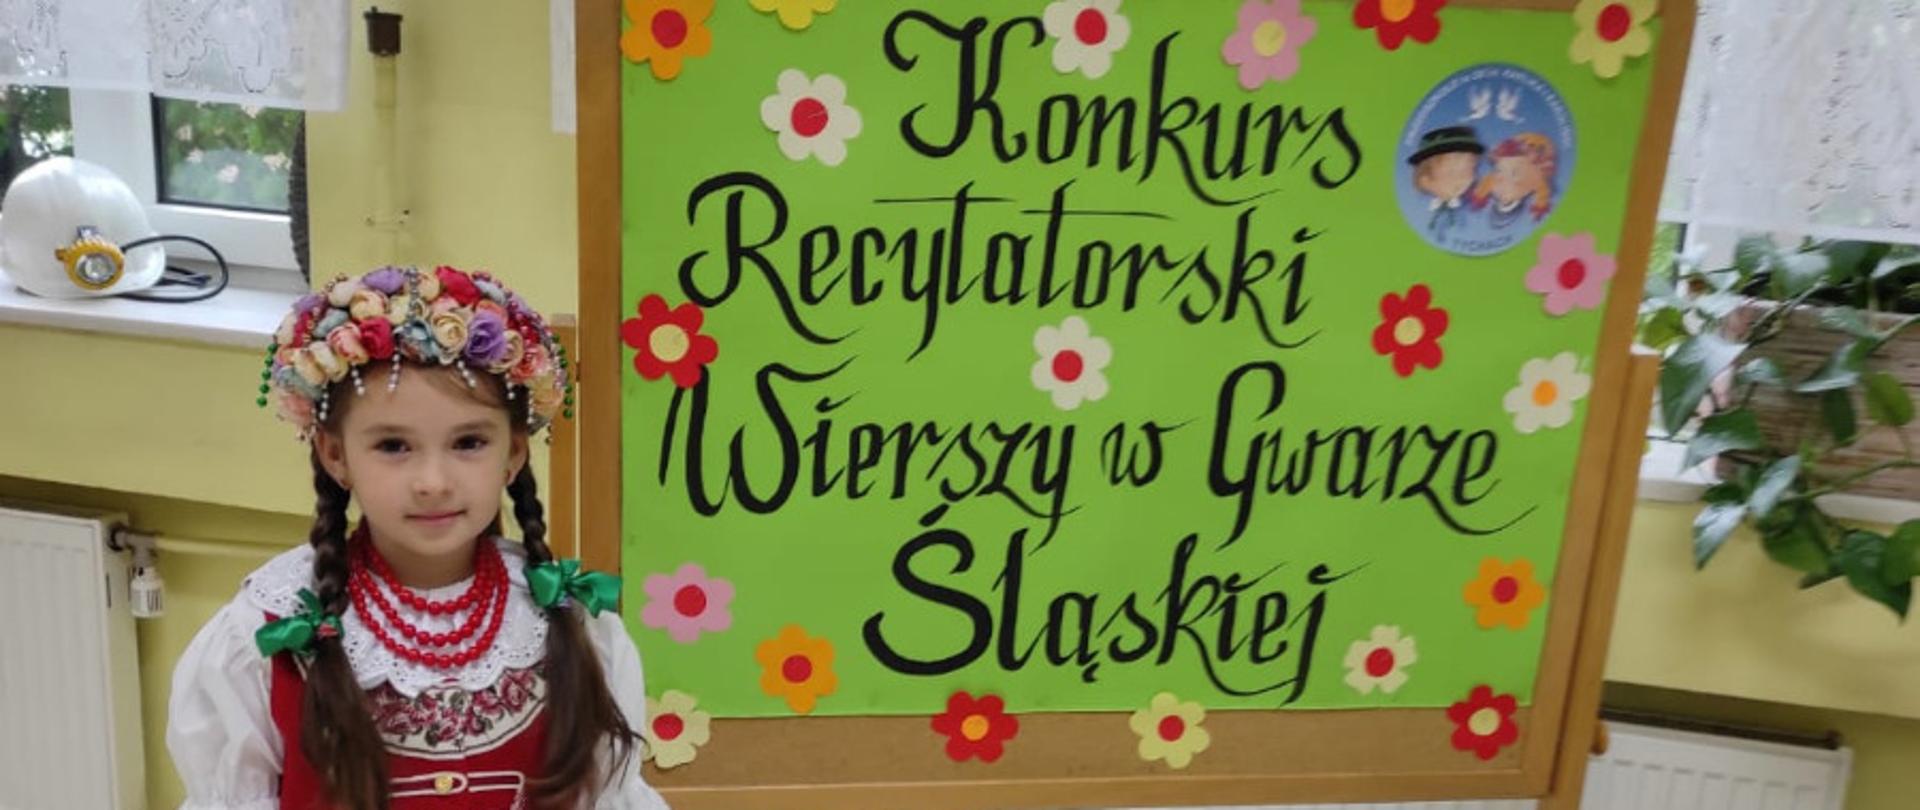 Dziewczynka w stroju śląskim przy zielonej tablicy z napisem konkurs recytatorski wierszy w gwarze śląskiej ozdobionej kwiatkami